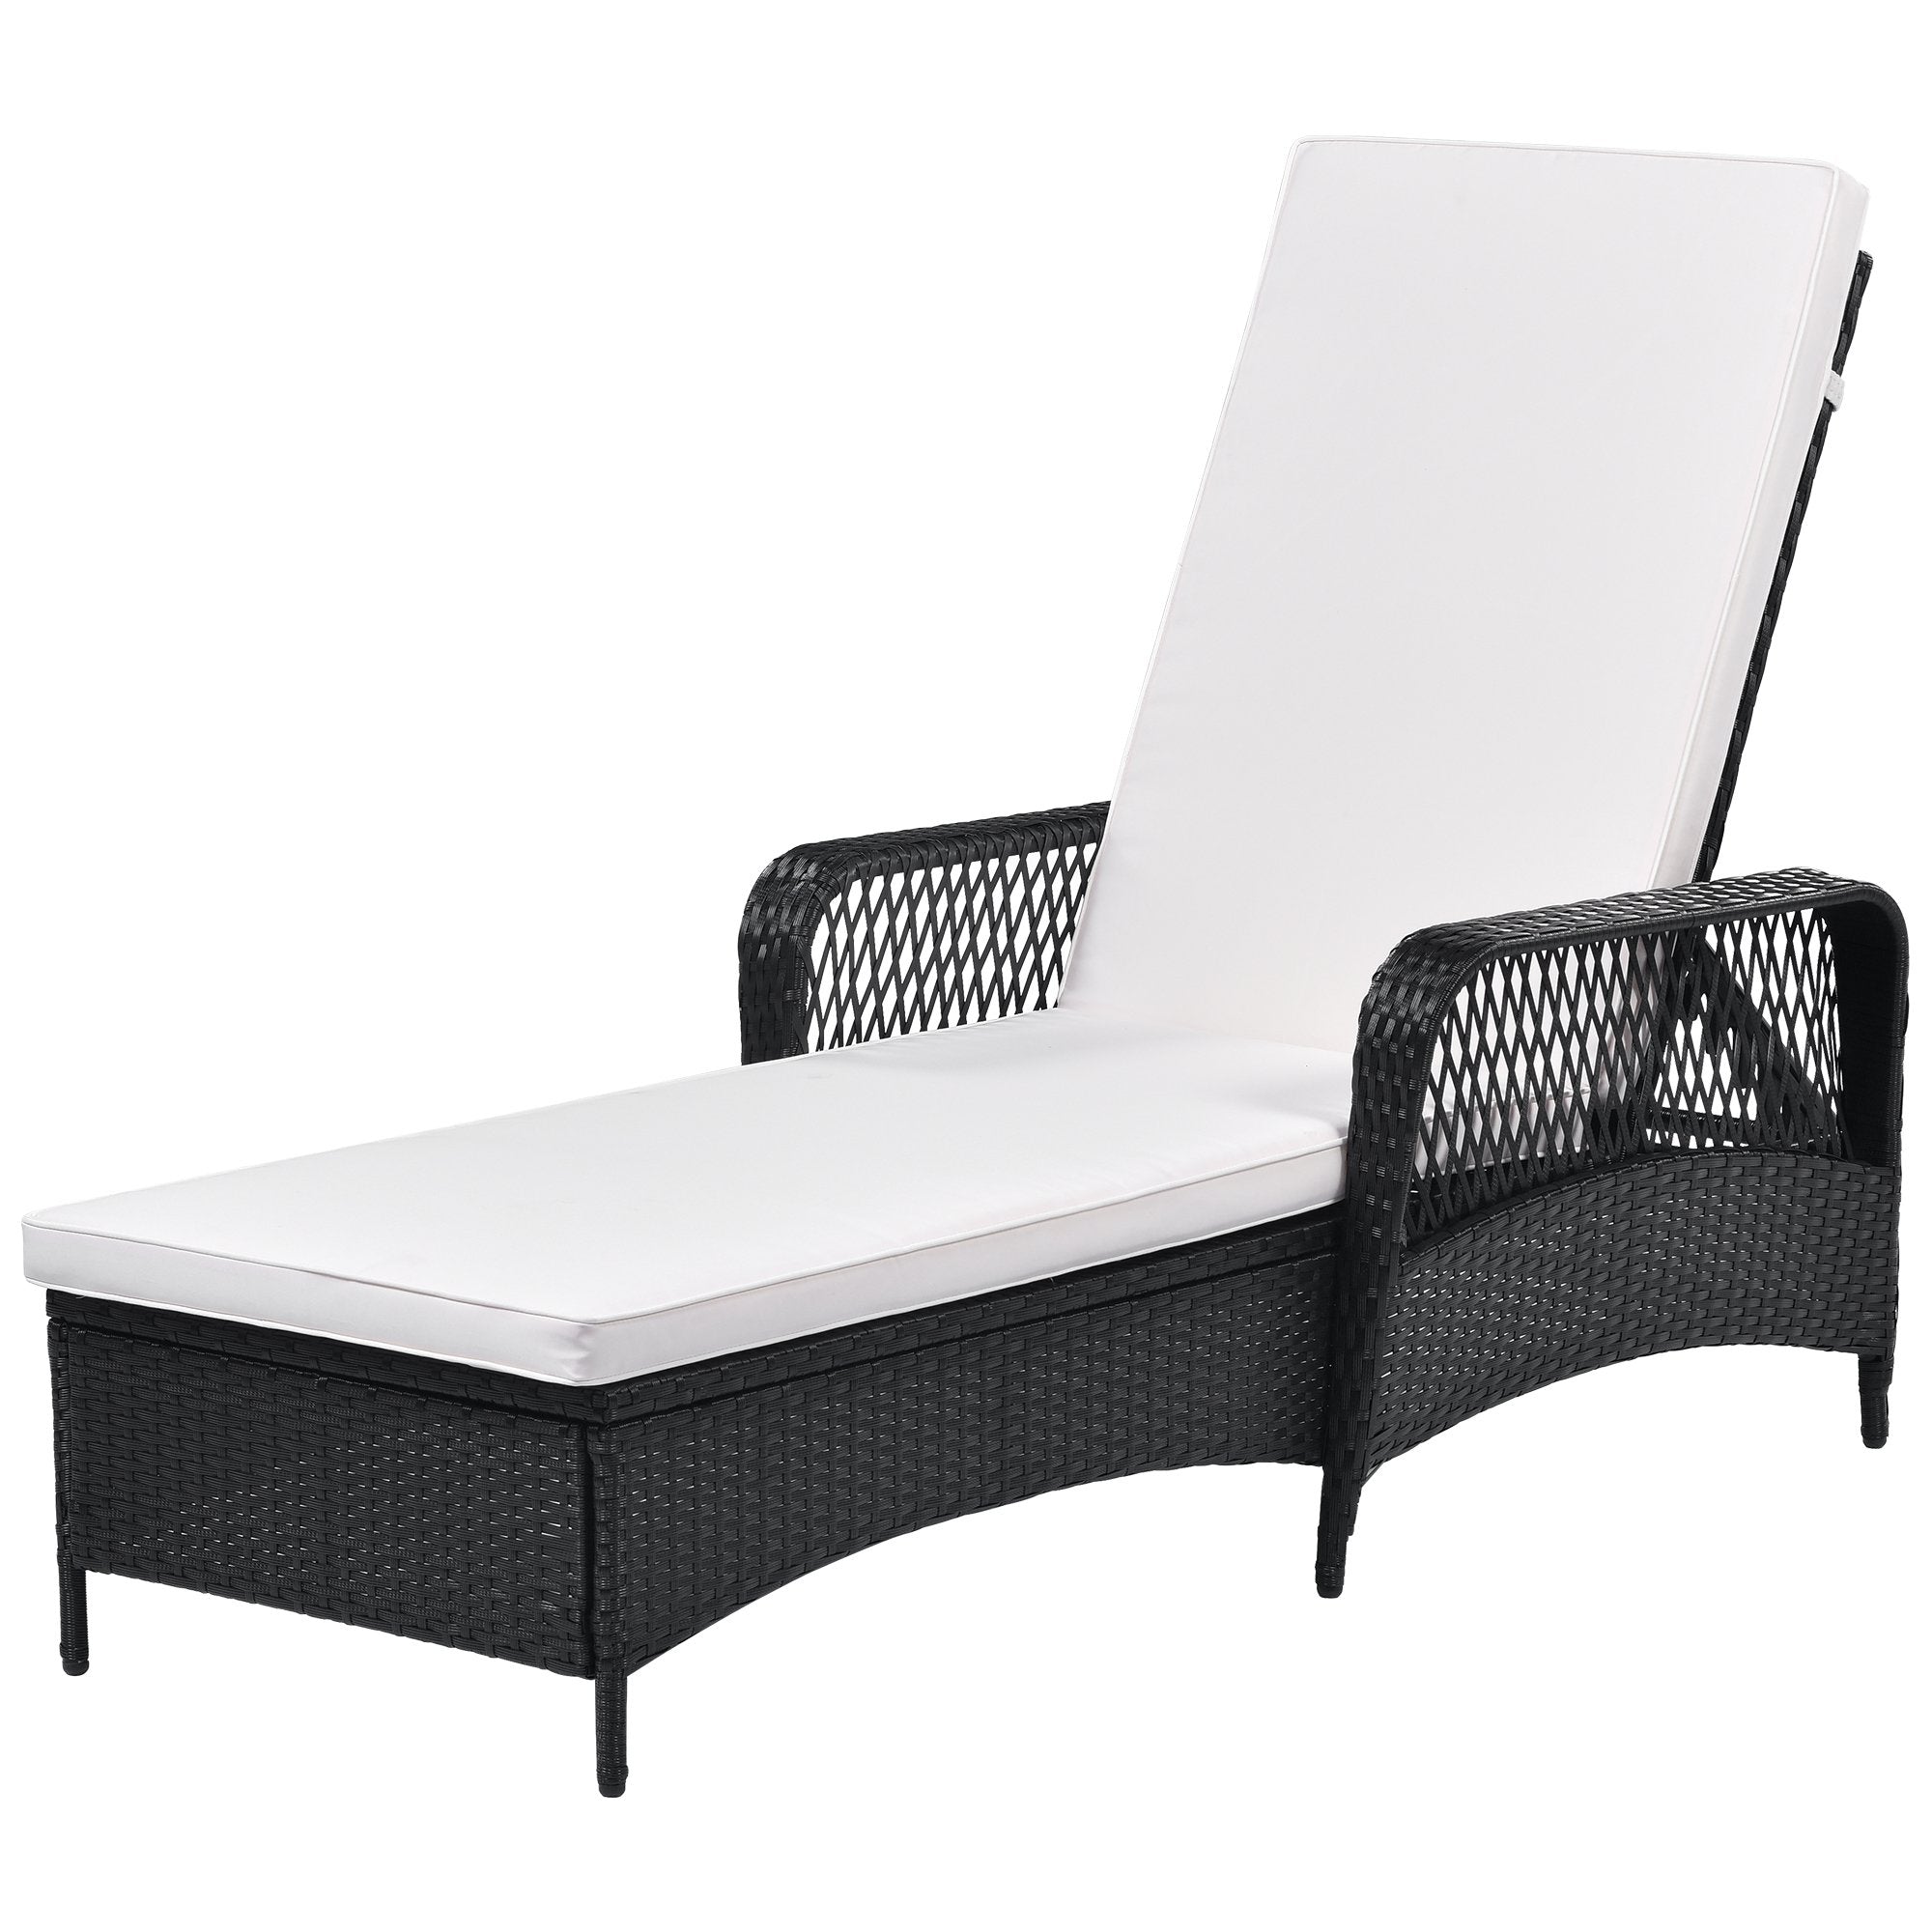 Outdoor patio pool PE rattan wicker chair wicker sun lounger, Adjustable backrest, beige cushion, Black wiker (1 set)